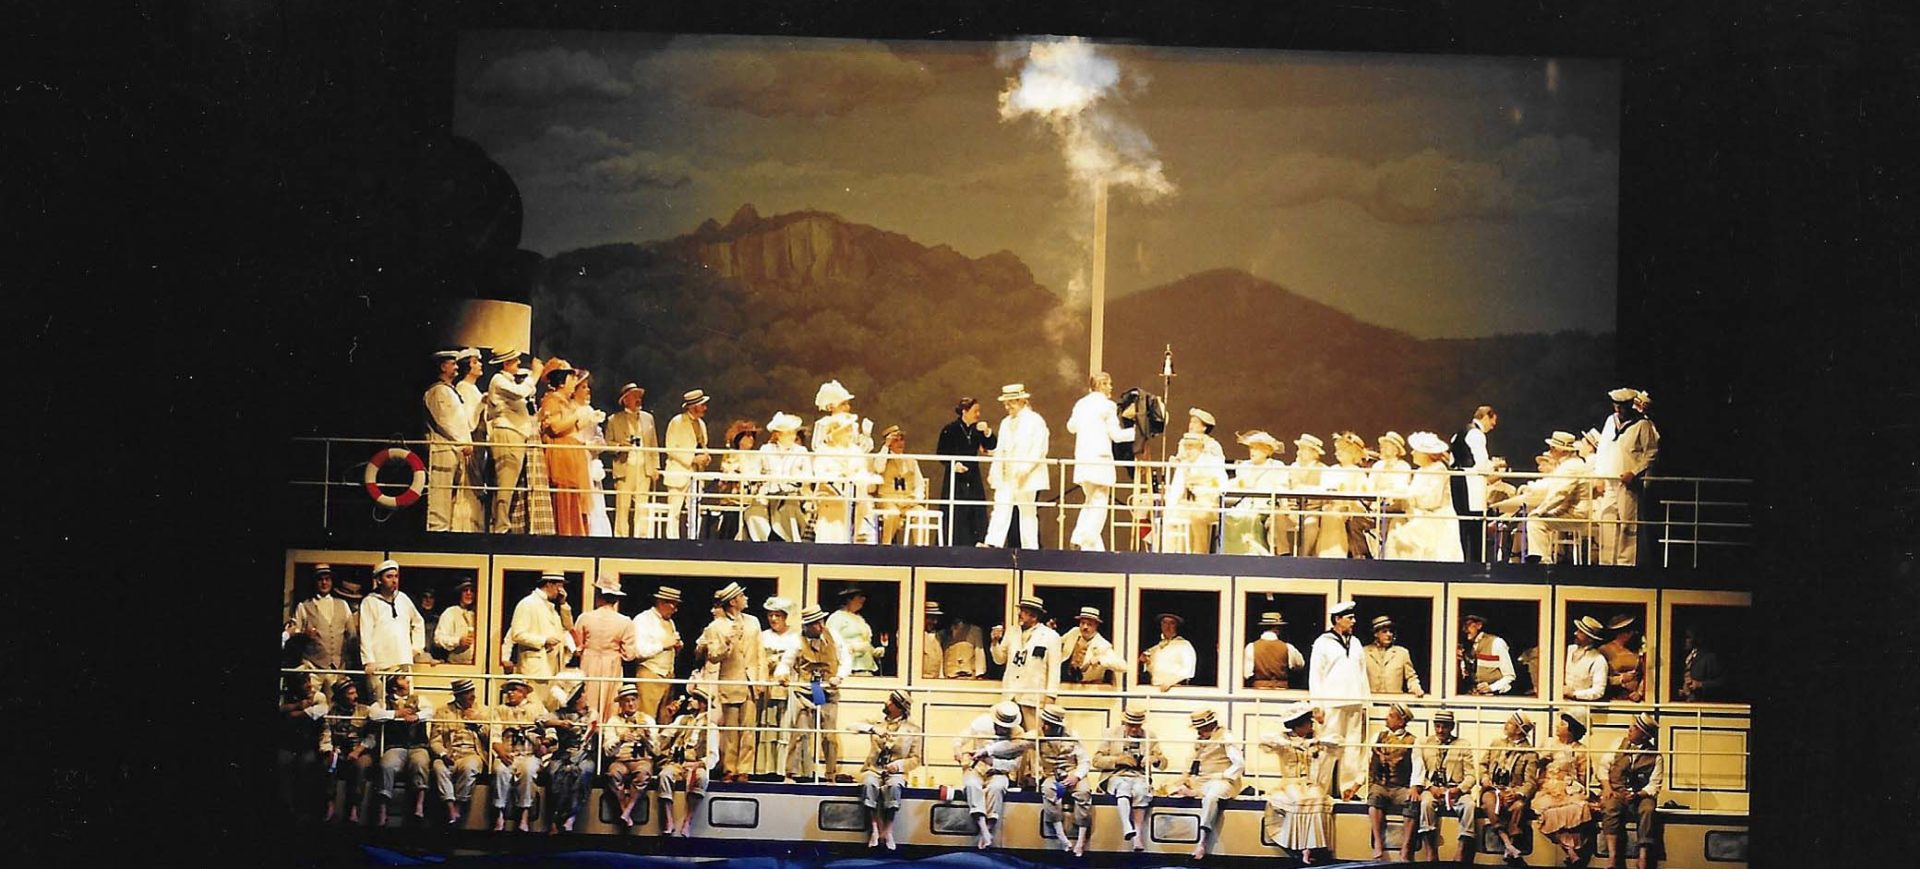 En kölsche Maskerad - Divertissementchen 1997 - Großer Chor in imposantem Bühnenbild